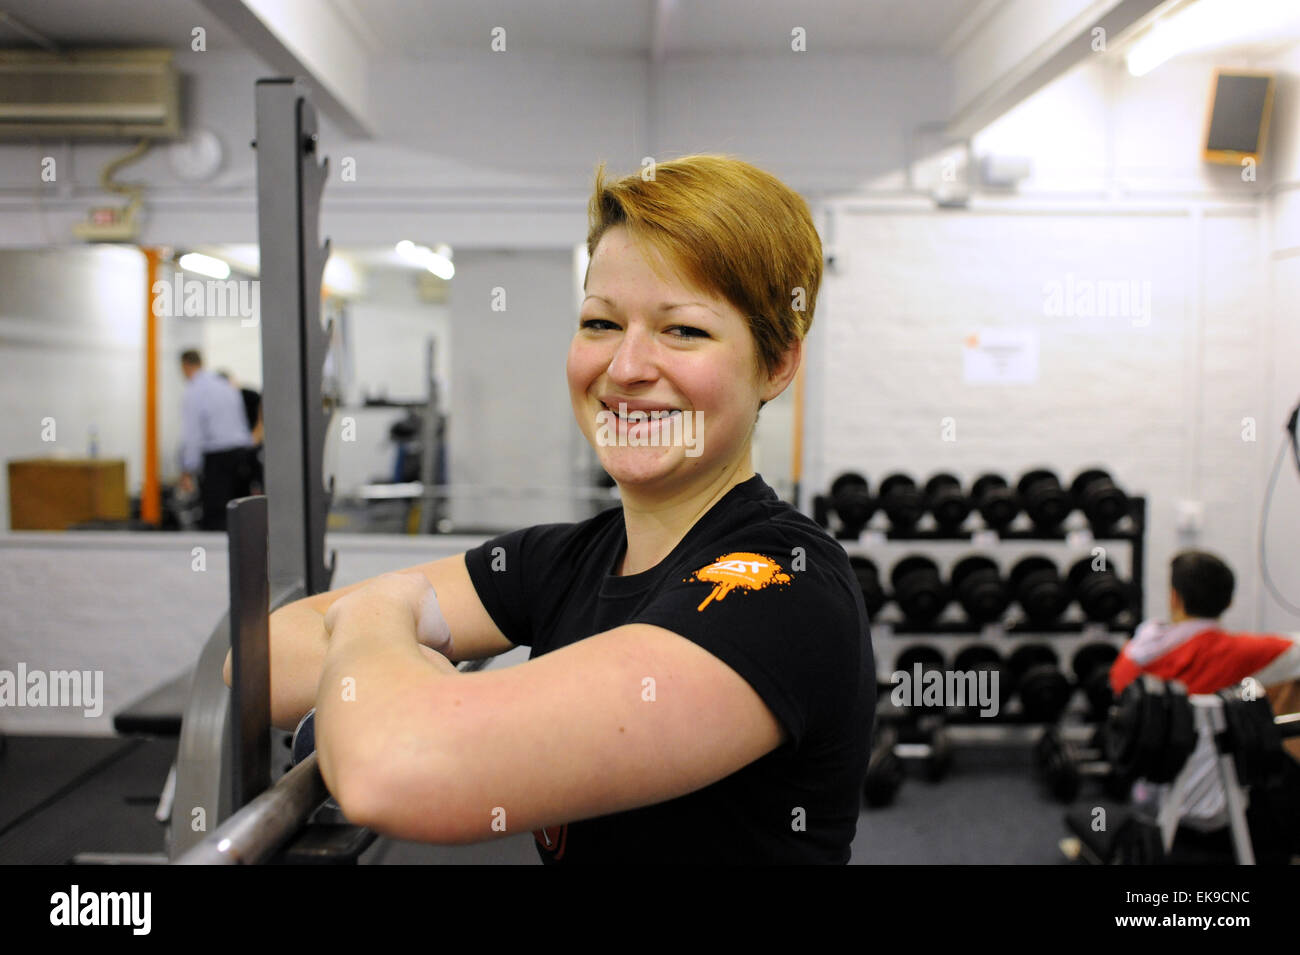 Gewichtheber 17 Jahr alt Josie Calvert Briggs in der Ausbildung an der ZT-Gym in Hove. Josie ist einer von nur 2 weibliche Gewichtheber in Sussex und sie bereitet sich auf Wettbewerbe Foto März 2010 Stockfoto